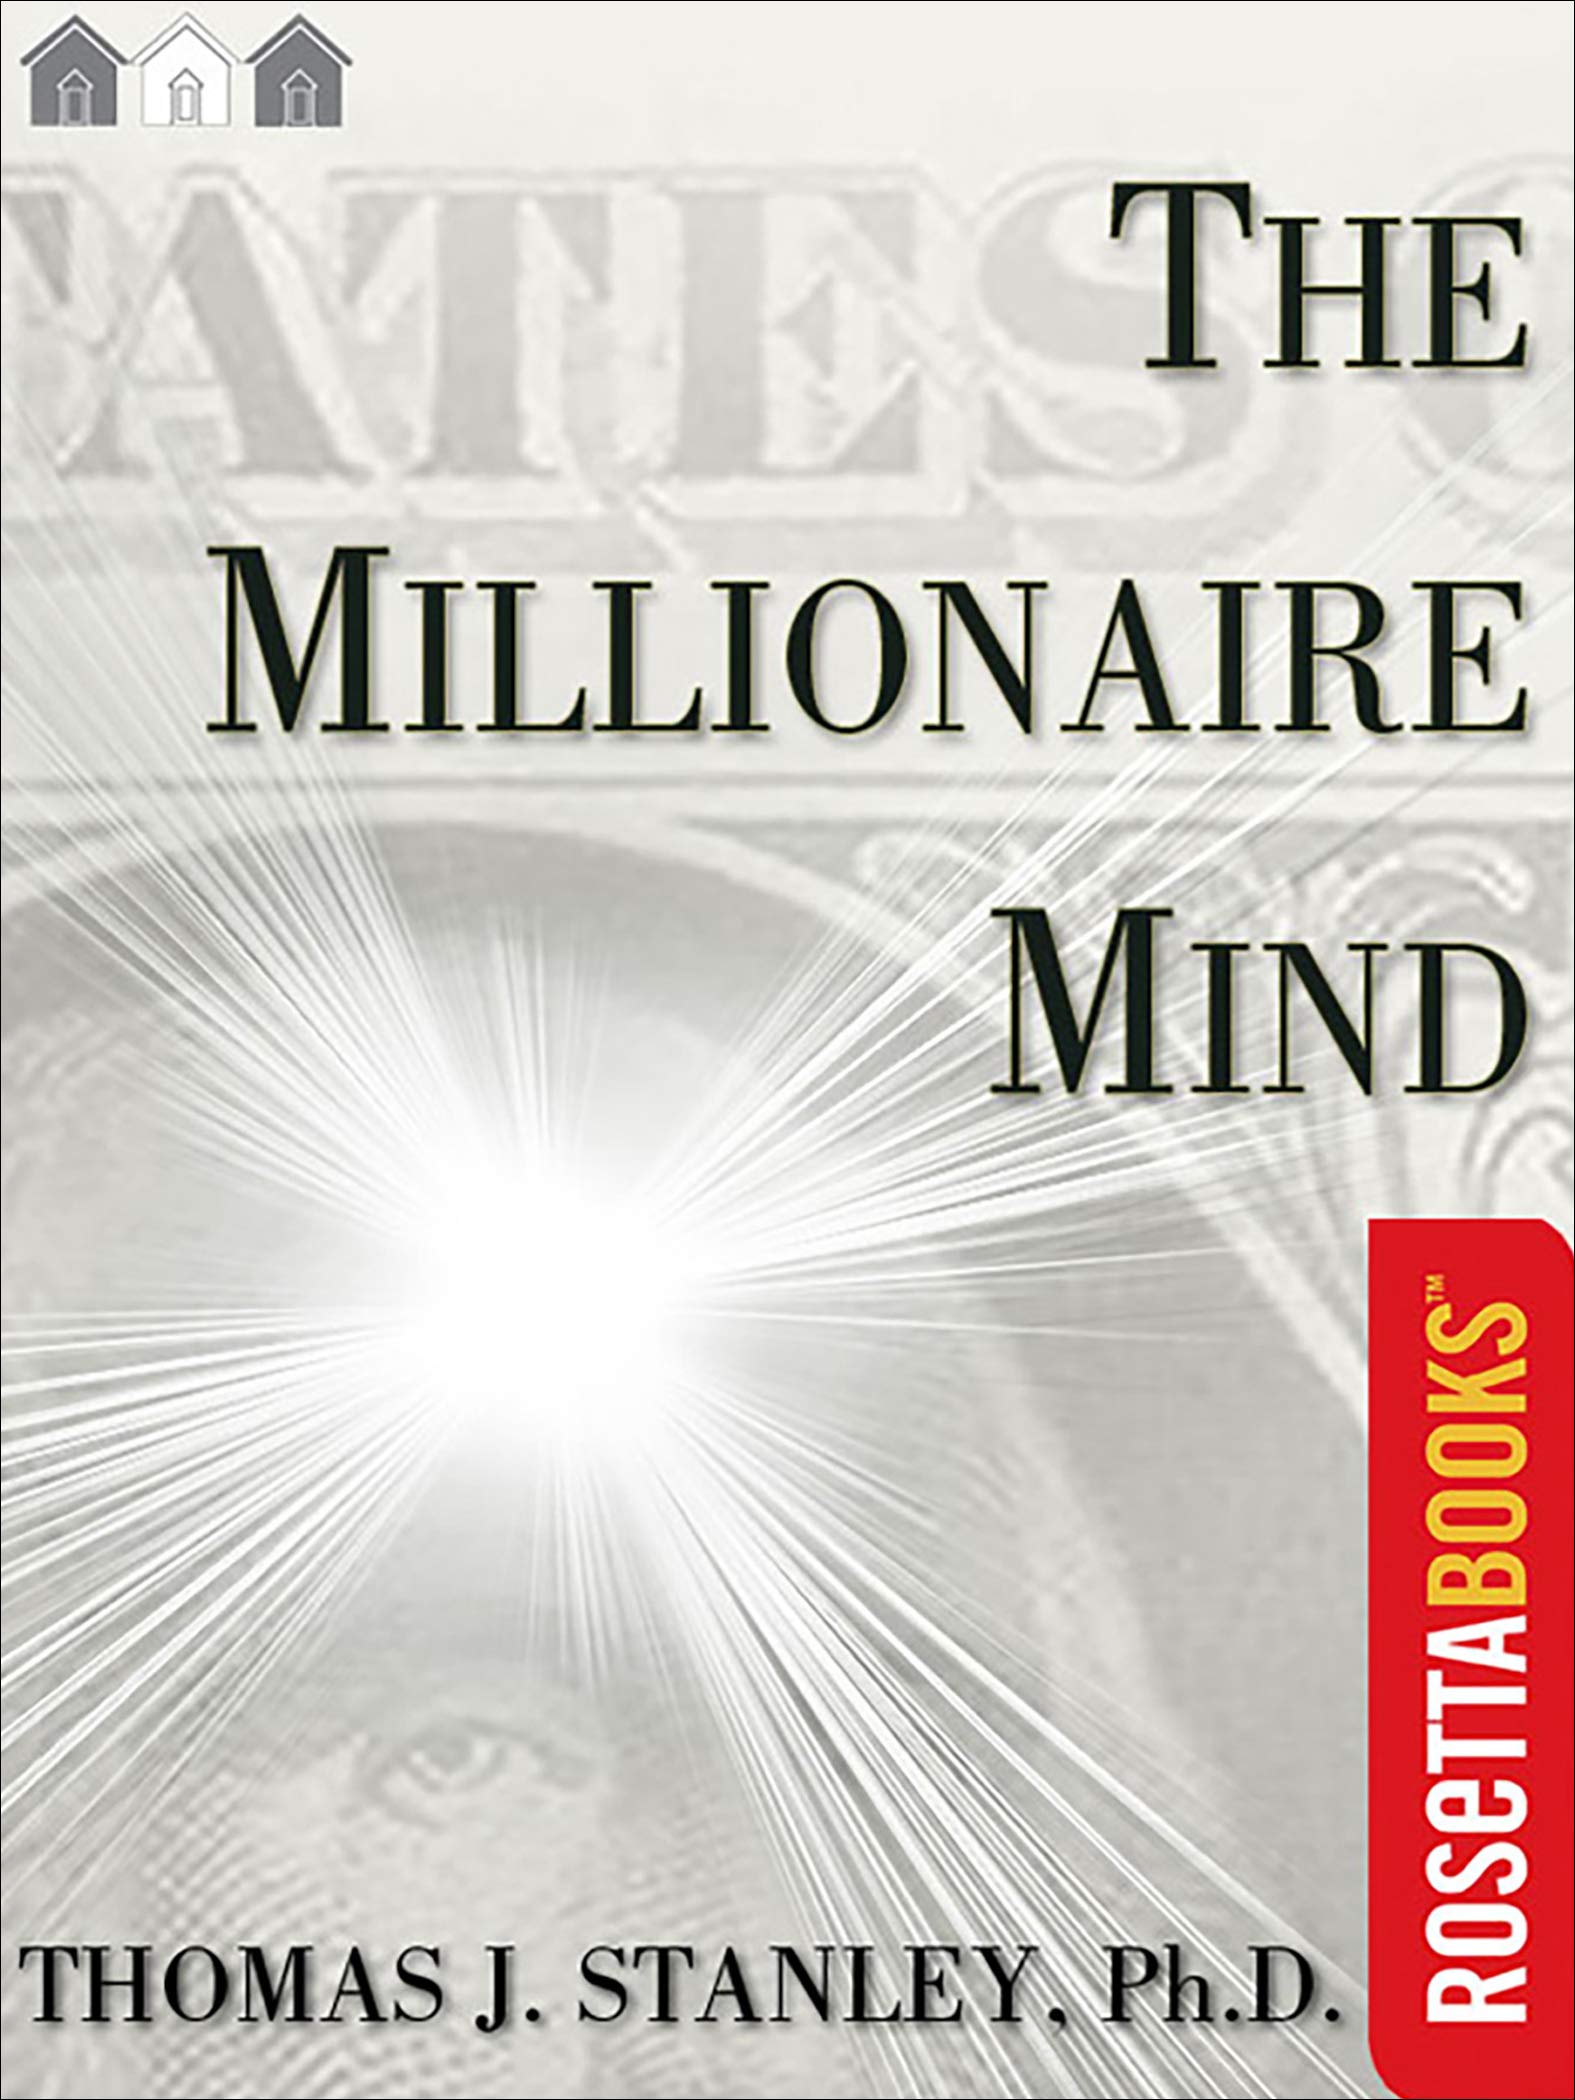 The Millionaire Mind (Millionaire Set)